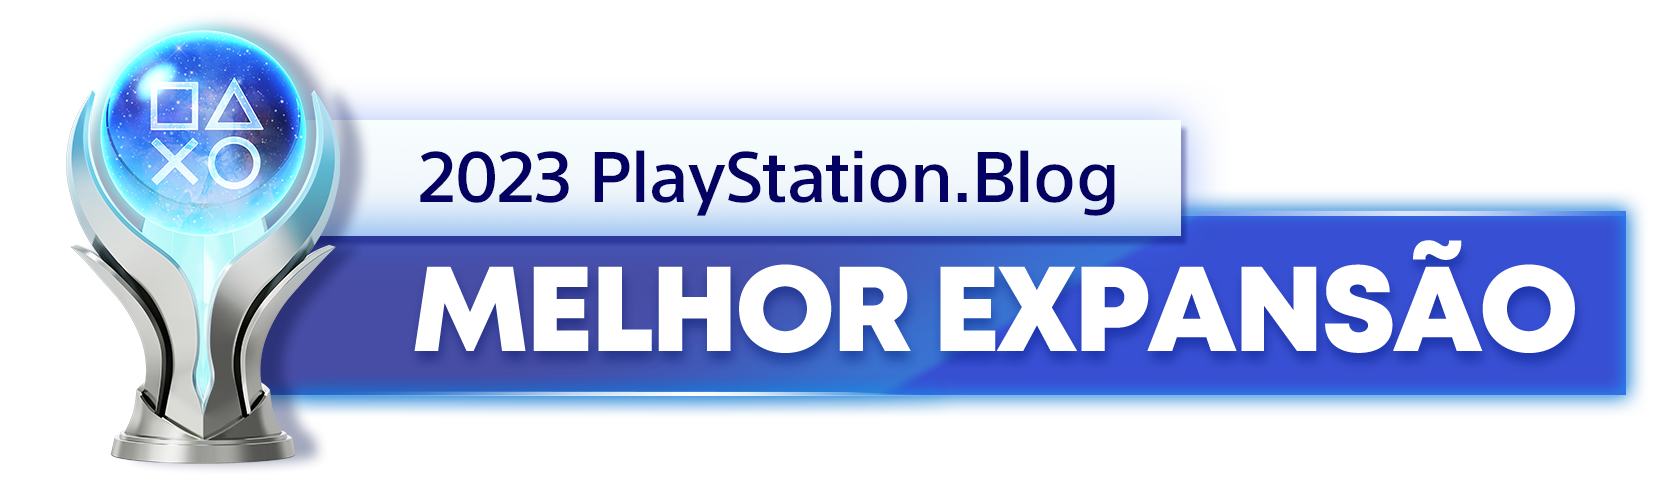  "Troféu de Platina para o vencedor da categoria Melhor Expansão de 2023 do PlayStation Blog "